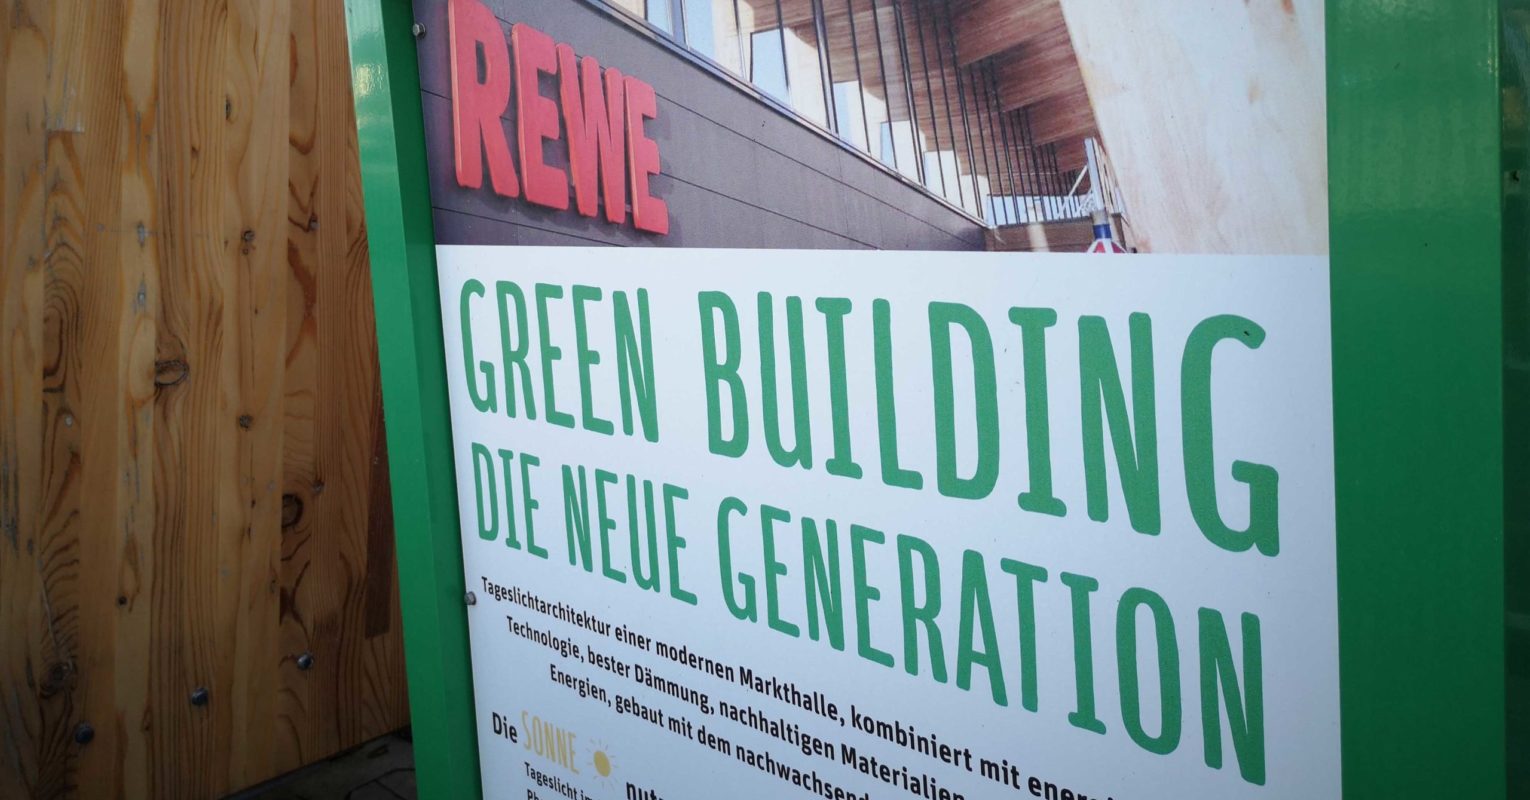 REWE eröffnet grünen Supermarkt der Zukunft mit Dachfarm und viel Holz